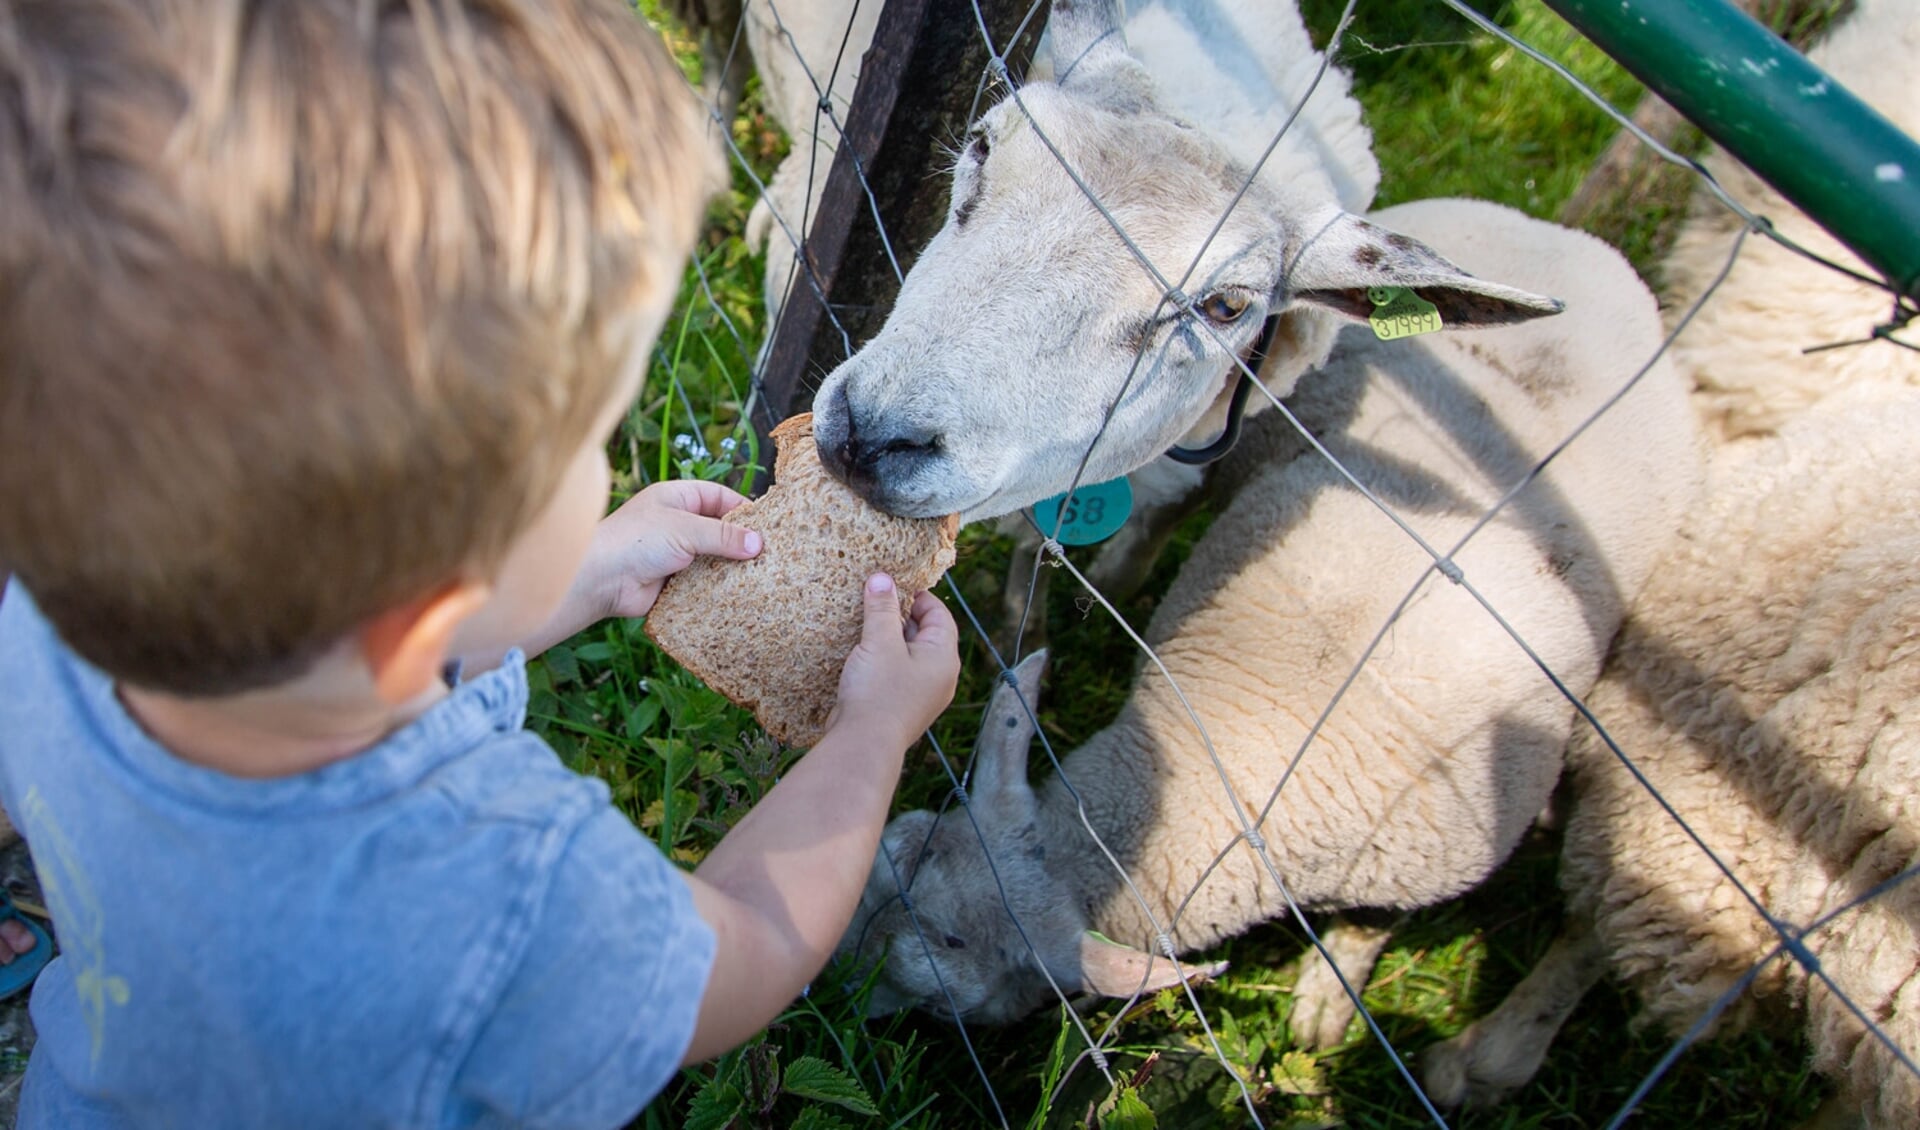 Er is genoeg te doen: schapen knuffelen, eitjes rapen, liedjes zingen en tomaten proeven uit de eigen moestuin. 